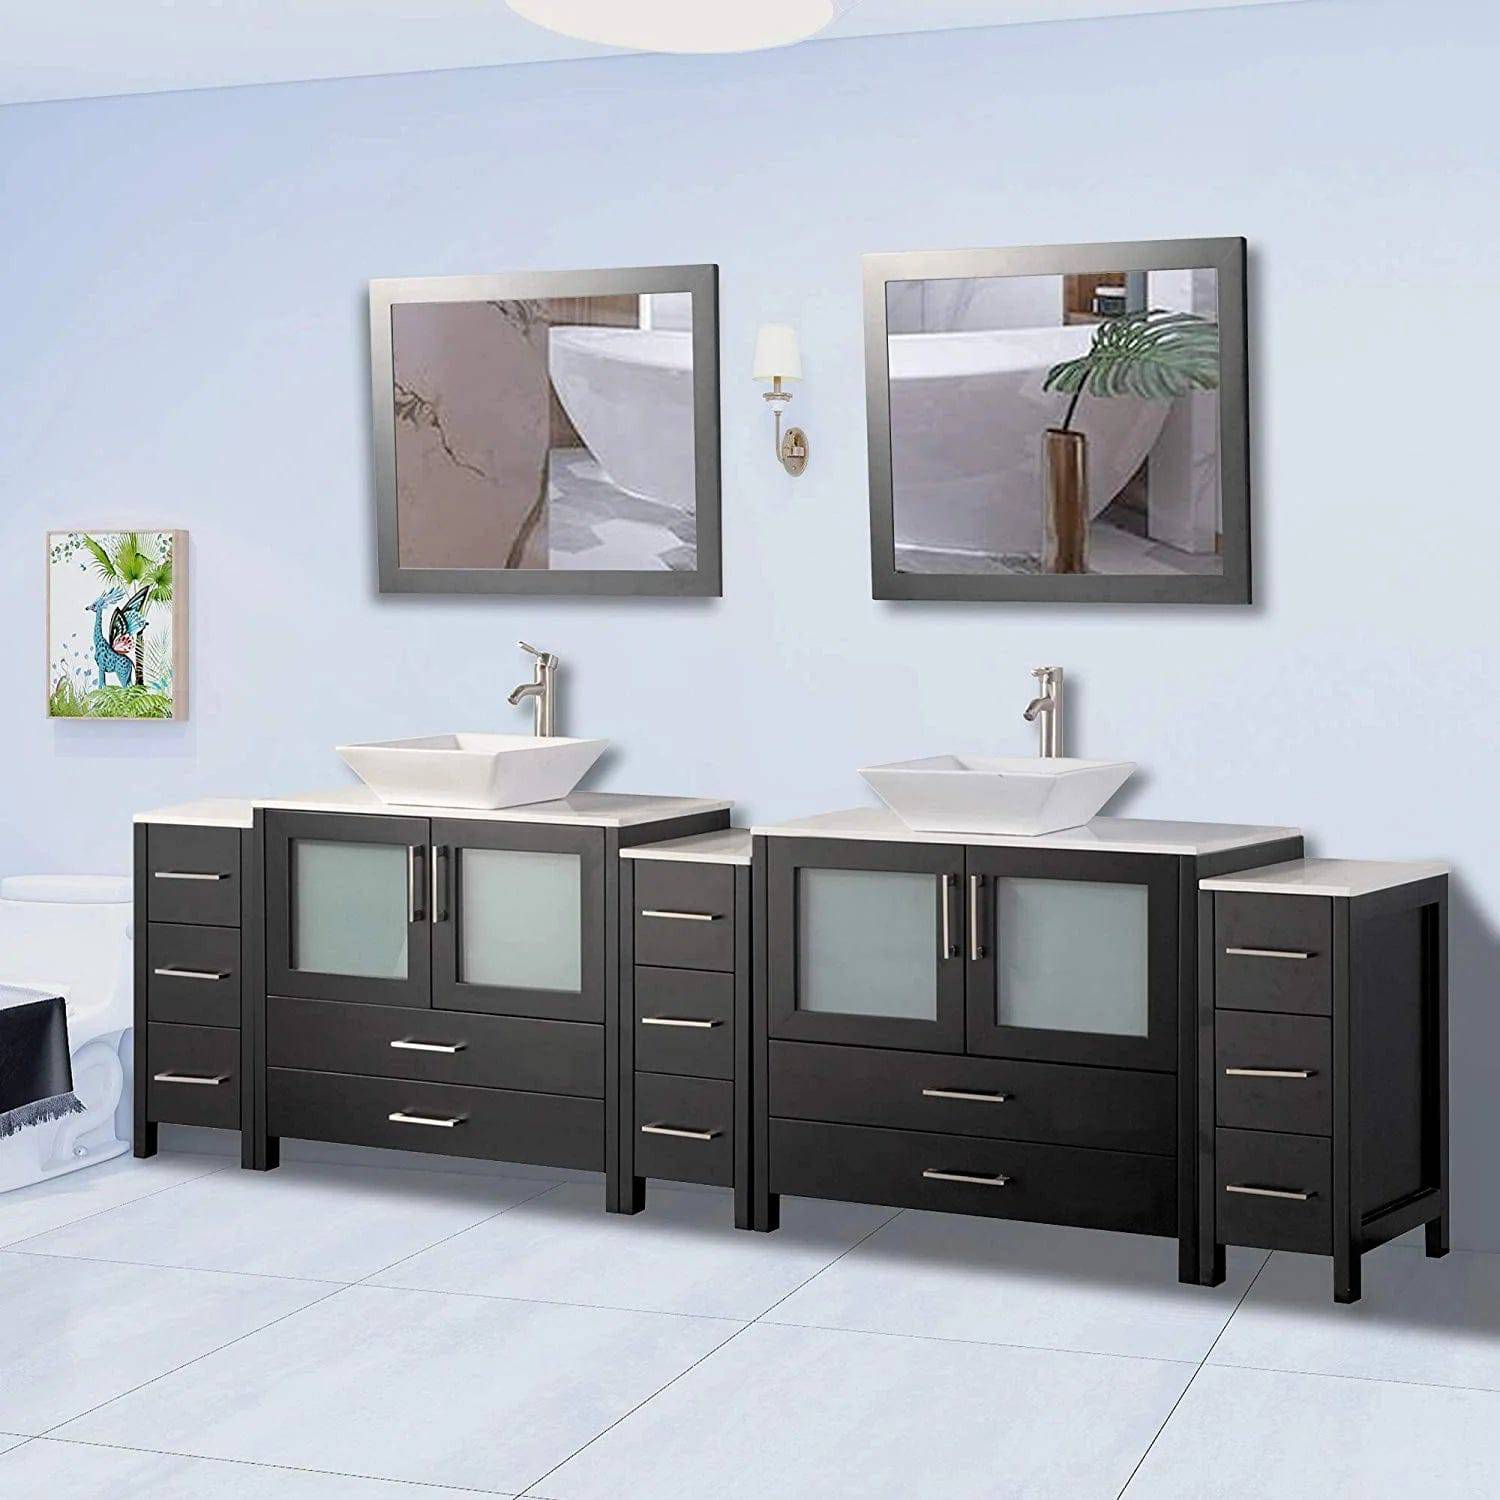 108 in. Double Sink Bathroom Vanity Combo Set in Espresso - Decohub Home